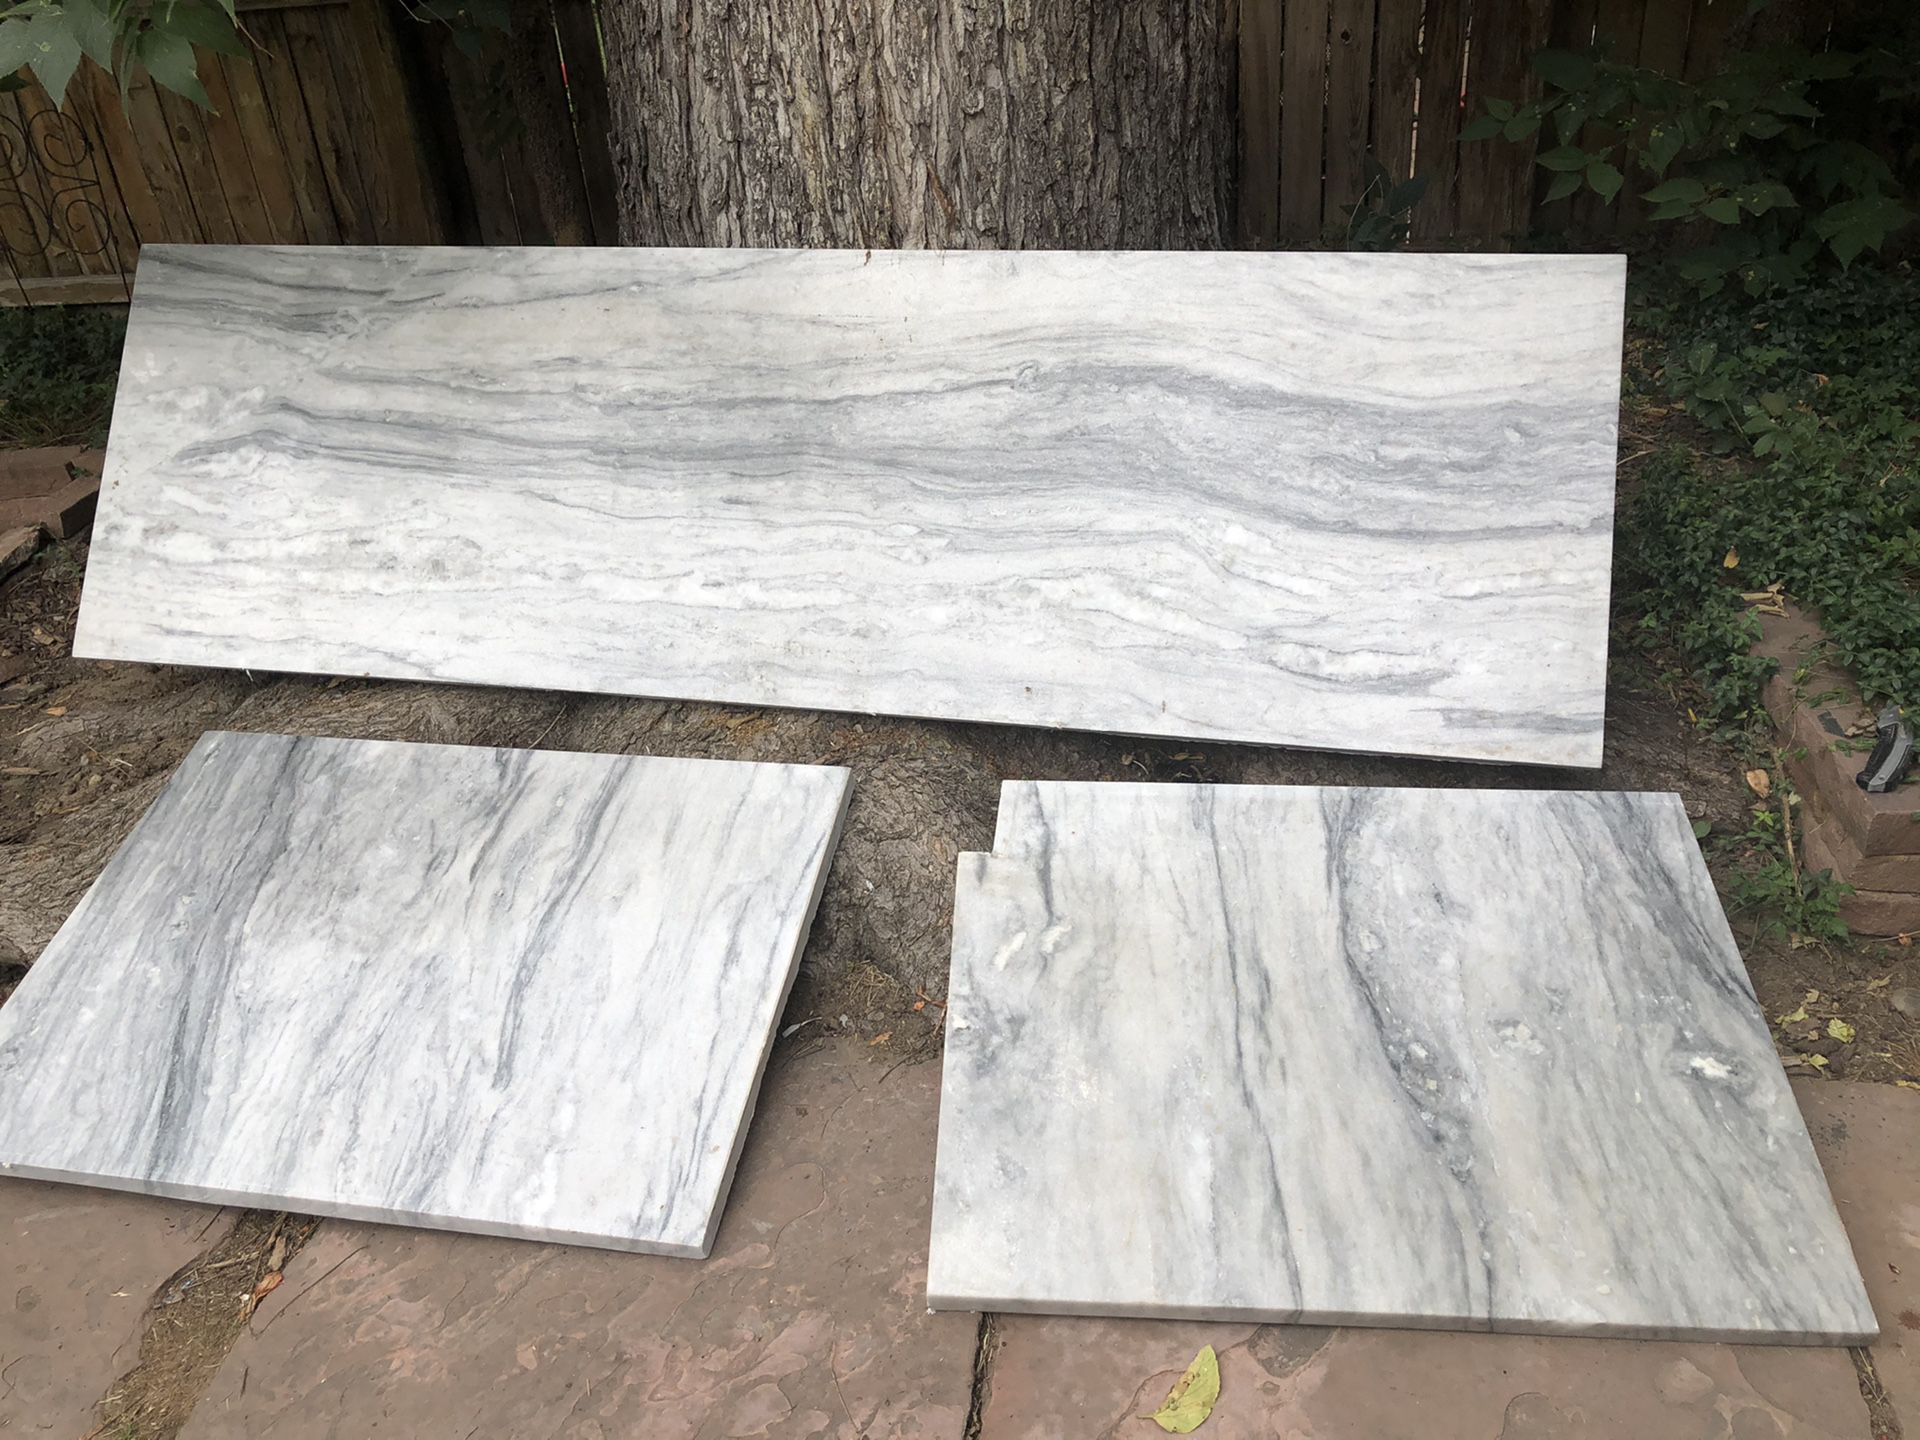 3 Quartz/marble countertop slabs